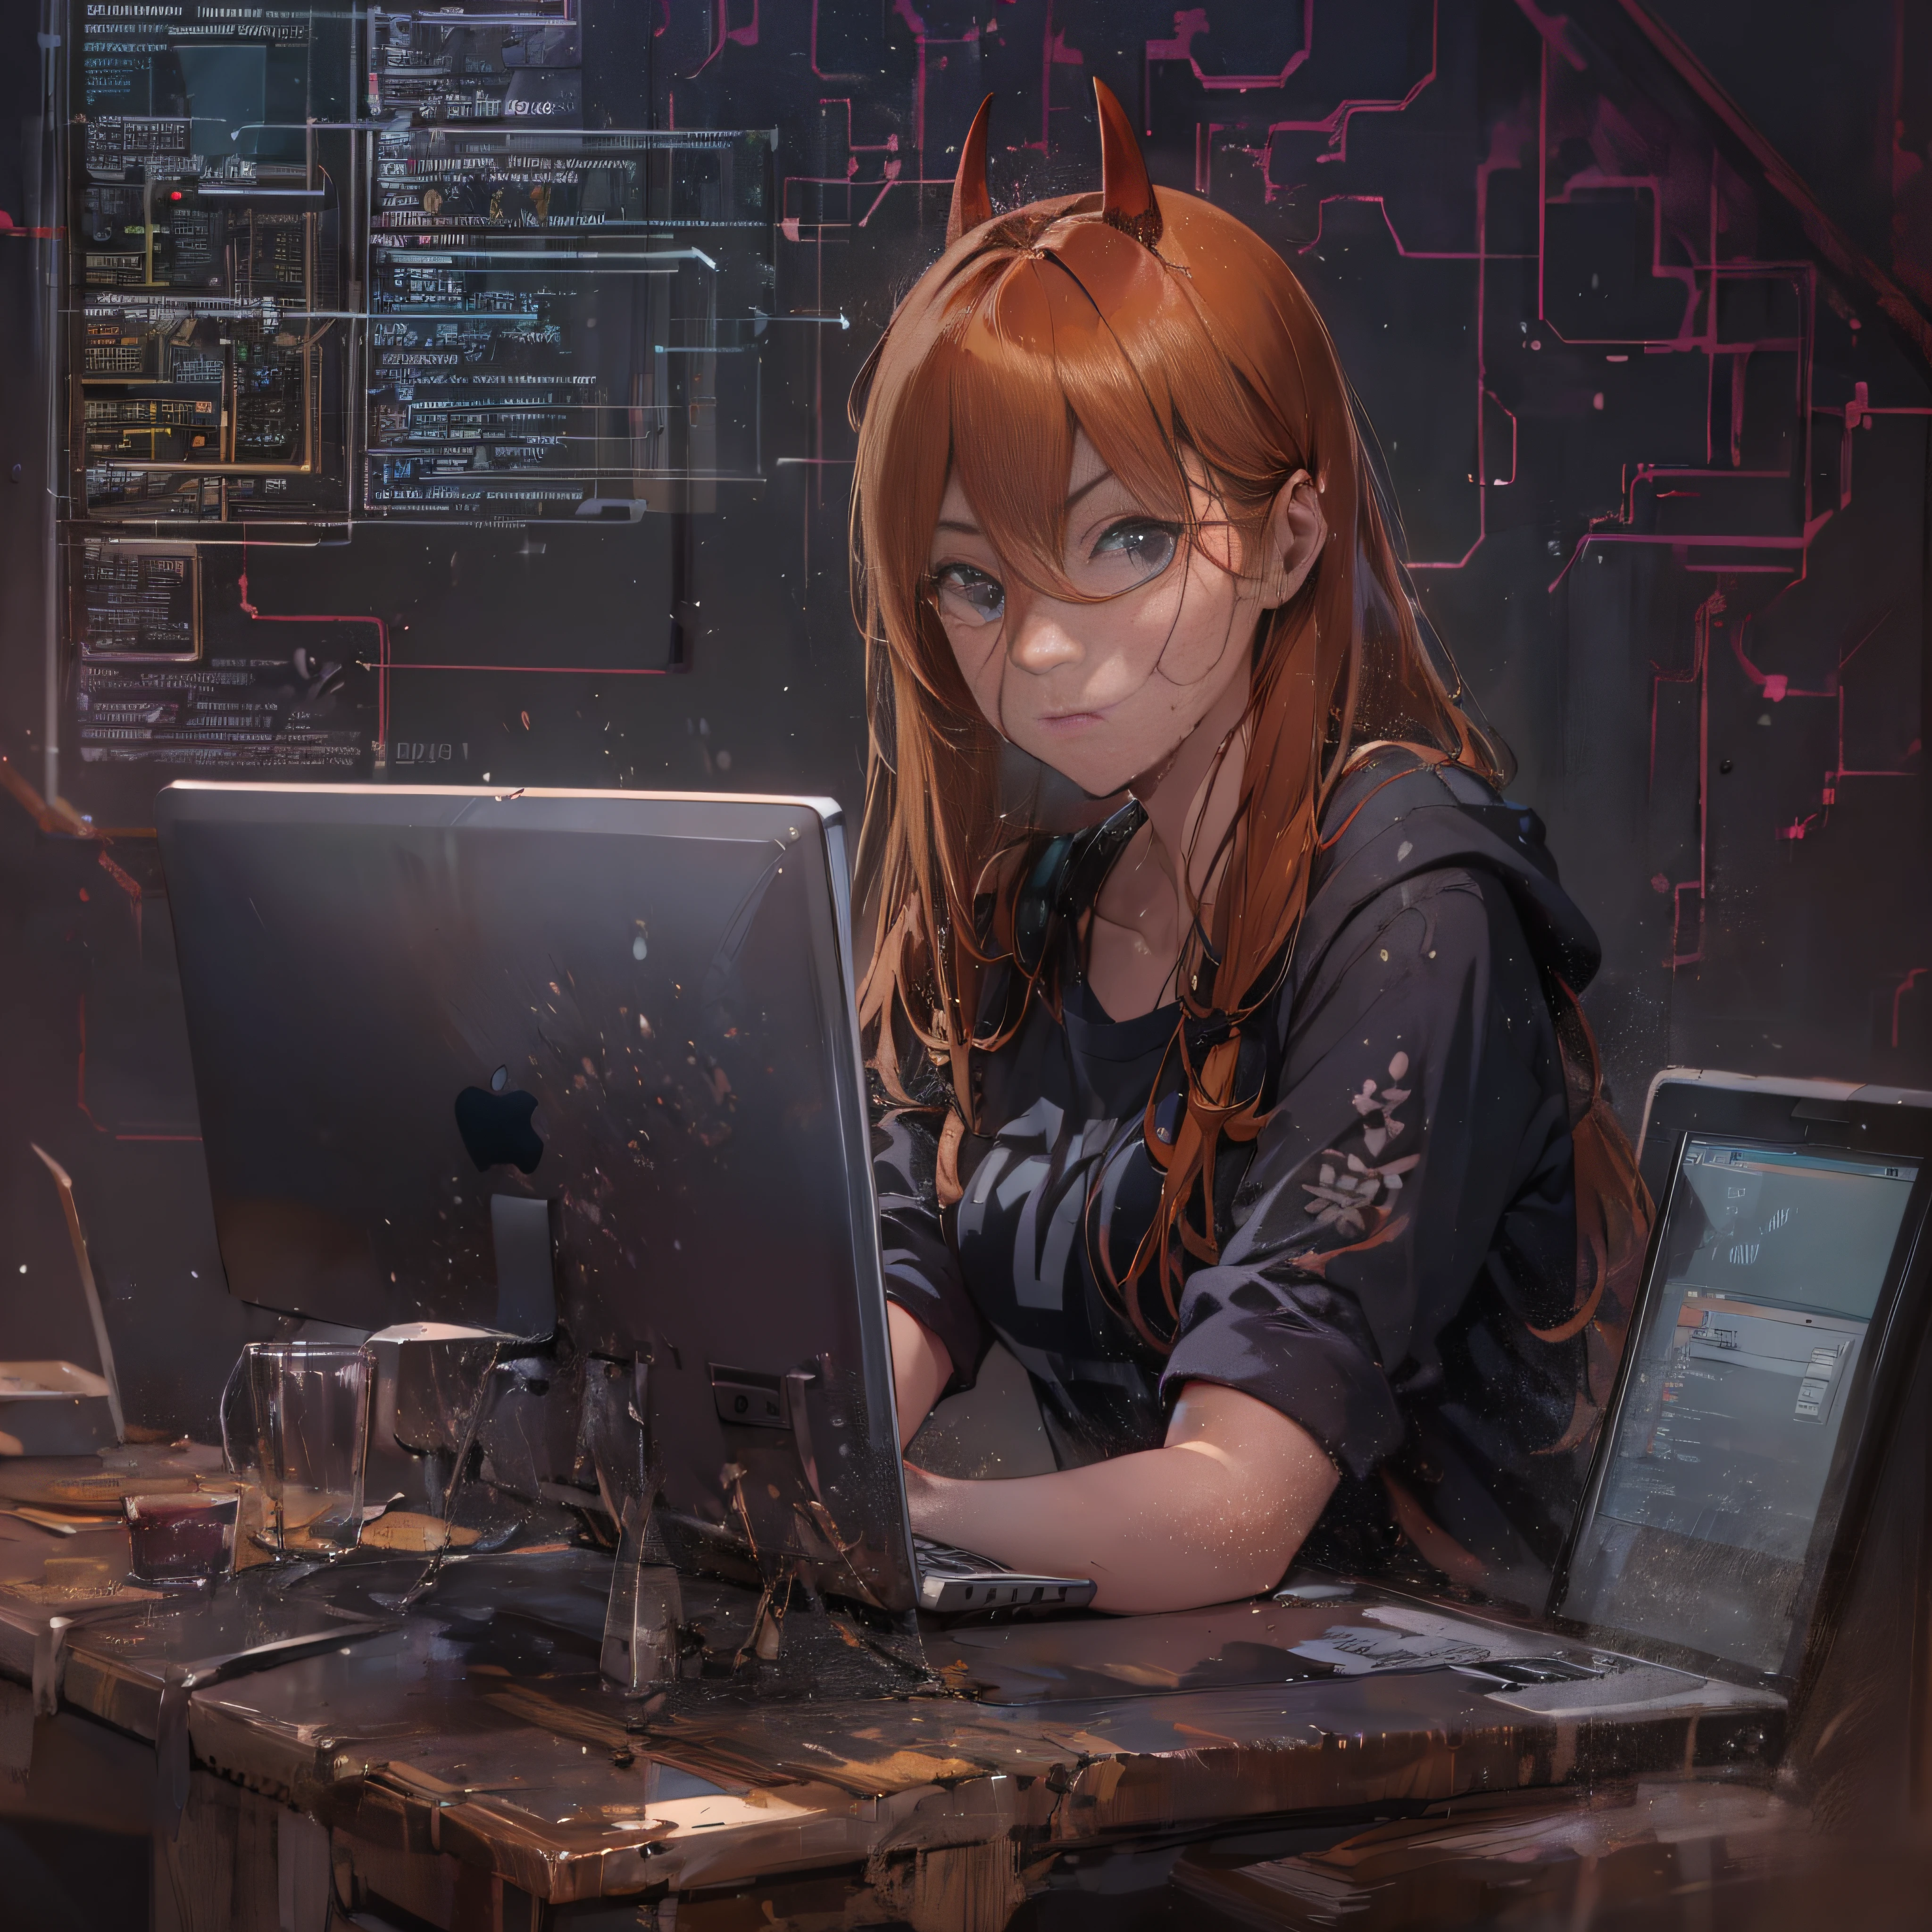 Ein Hacker spricht über Cybersicherheit: rote Haare mit Pony ohne Haar, schwarzes Shirt, schwarzes Höschen, wet, ervers, cyber, Laptop.